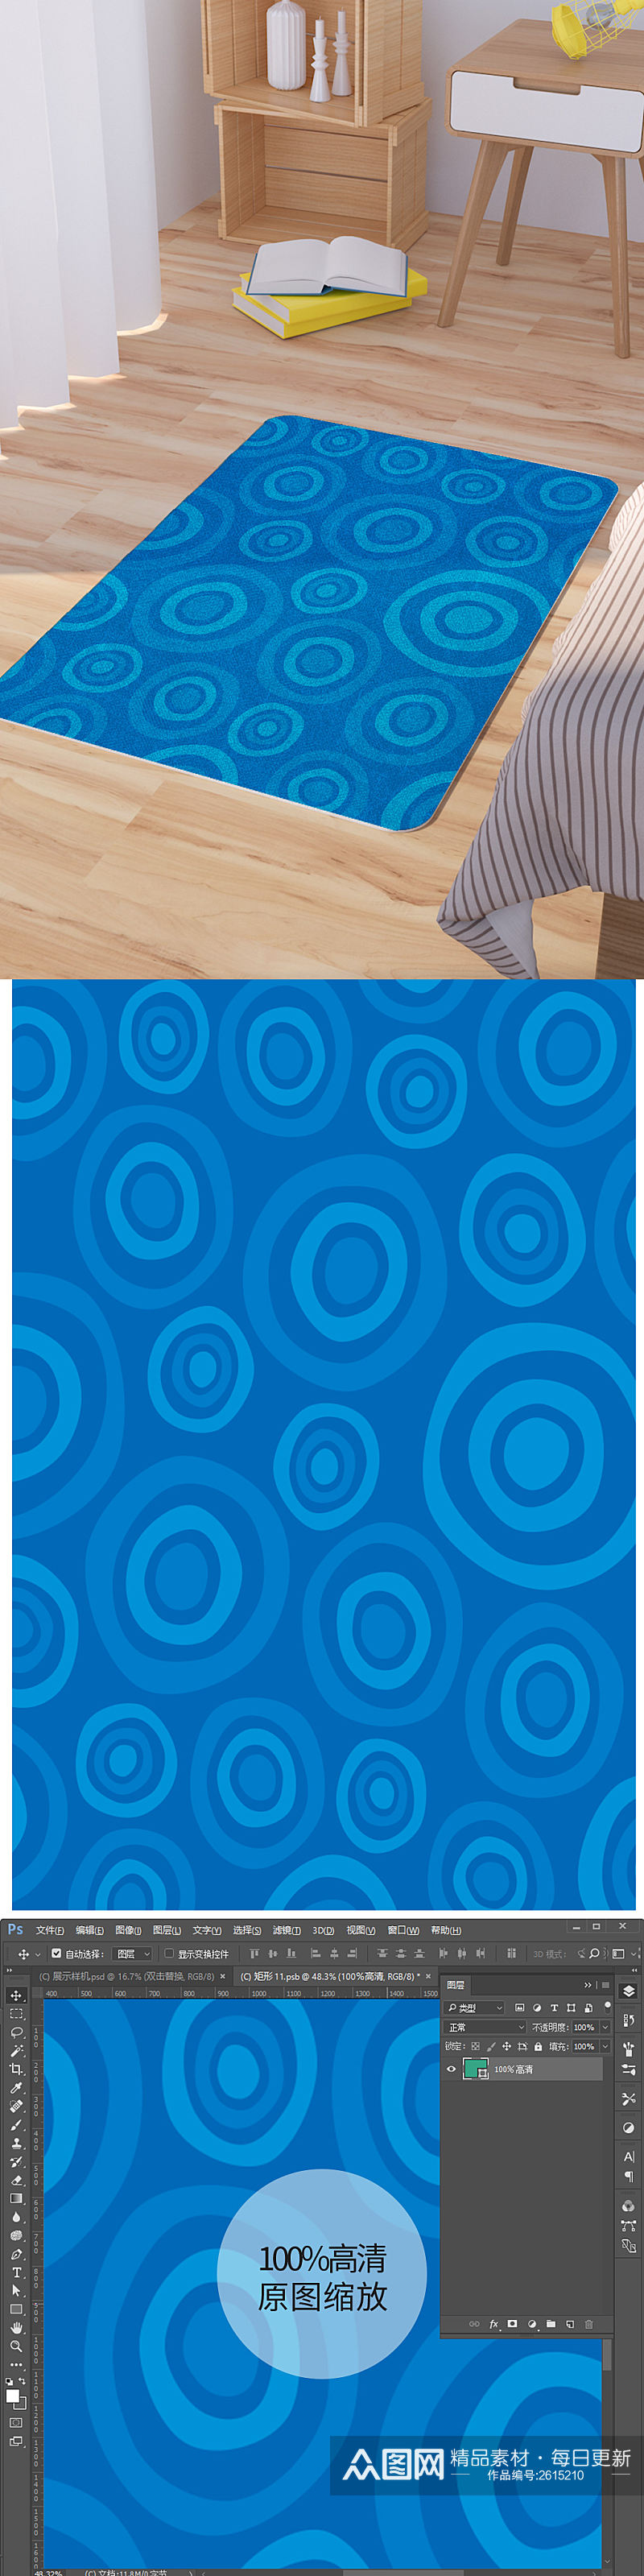 矢量手绘蓝色圆圈可爱脚垫地毯图案素材